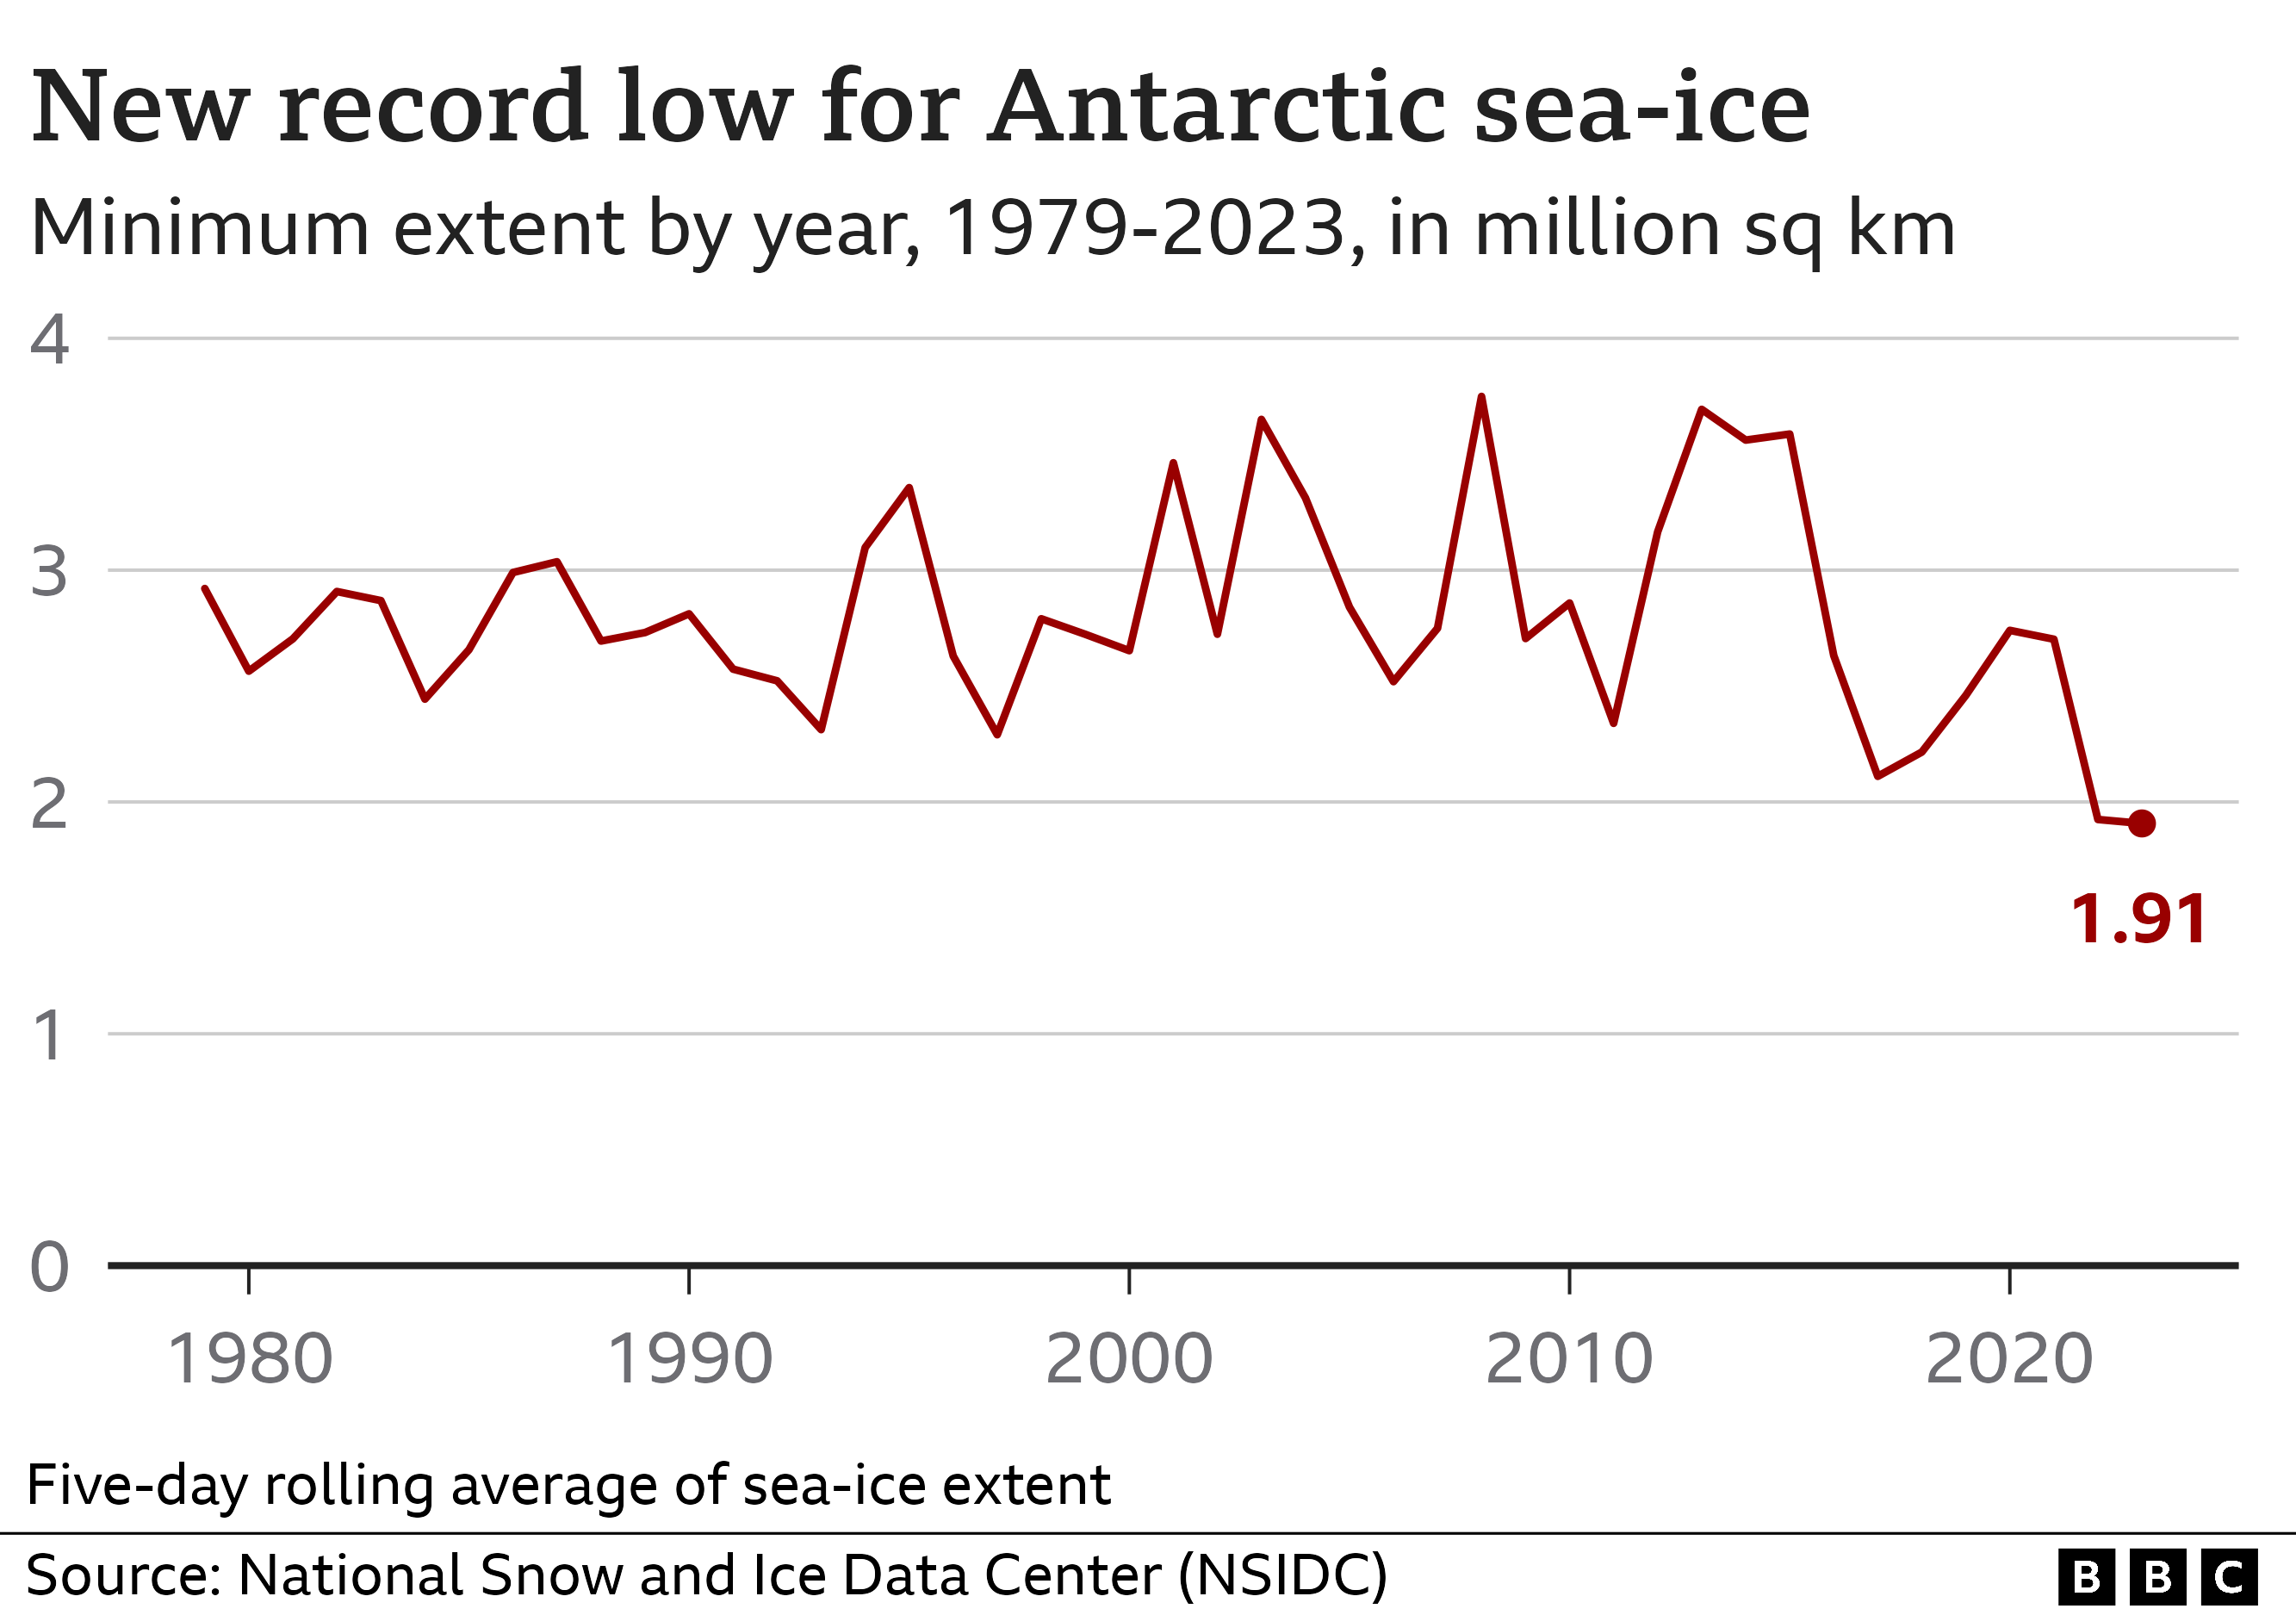 Gráfico de líneas que representa el punto más bajo de hielo marino medido cada año desde 1979 hasta 2023. Aunque la línea fluctúa considerablemente, hay una ligera tendencia a la baja en los últimos años que termina con un nuevo récord establecido en 2023 en 1,91 millones de kilómetros cuadrados